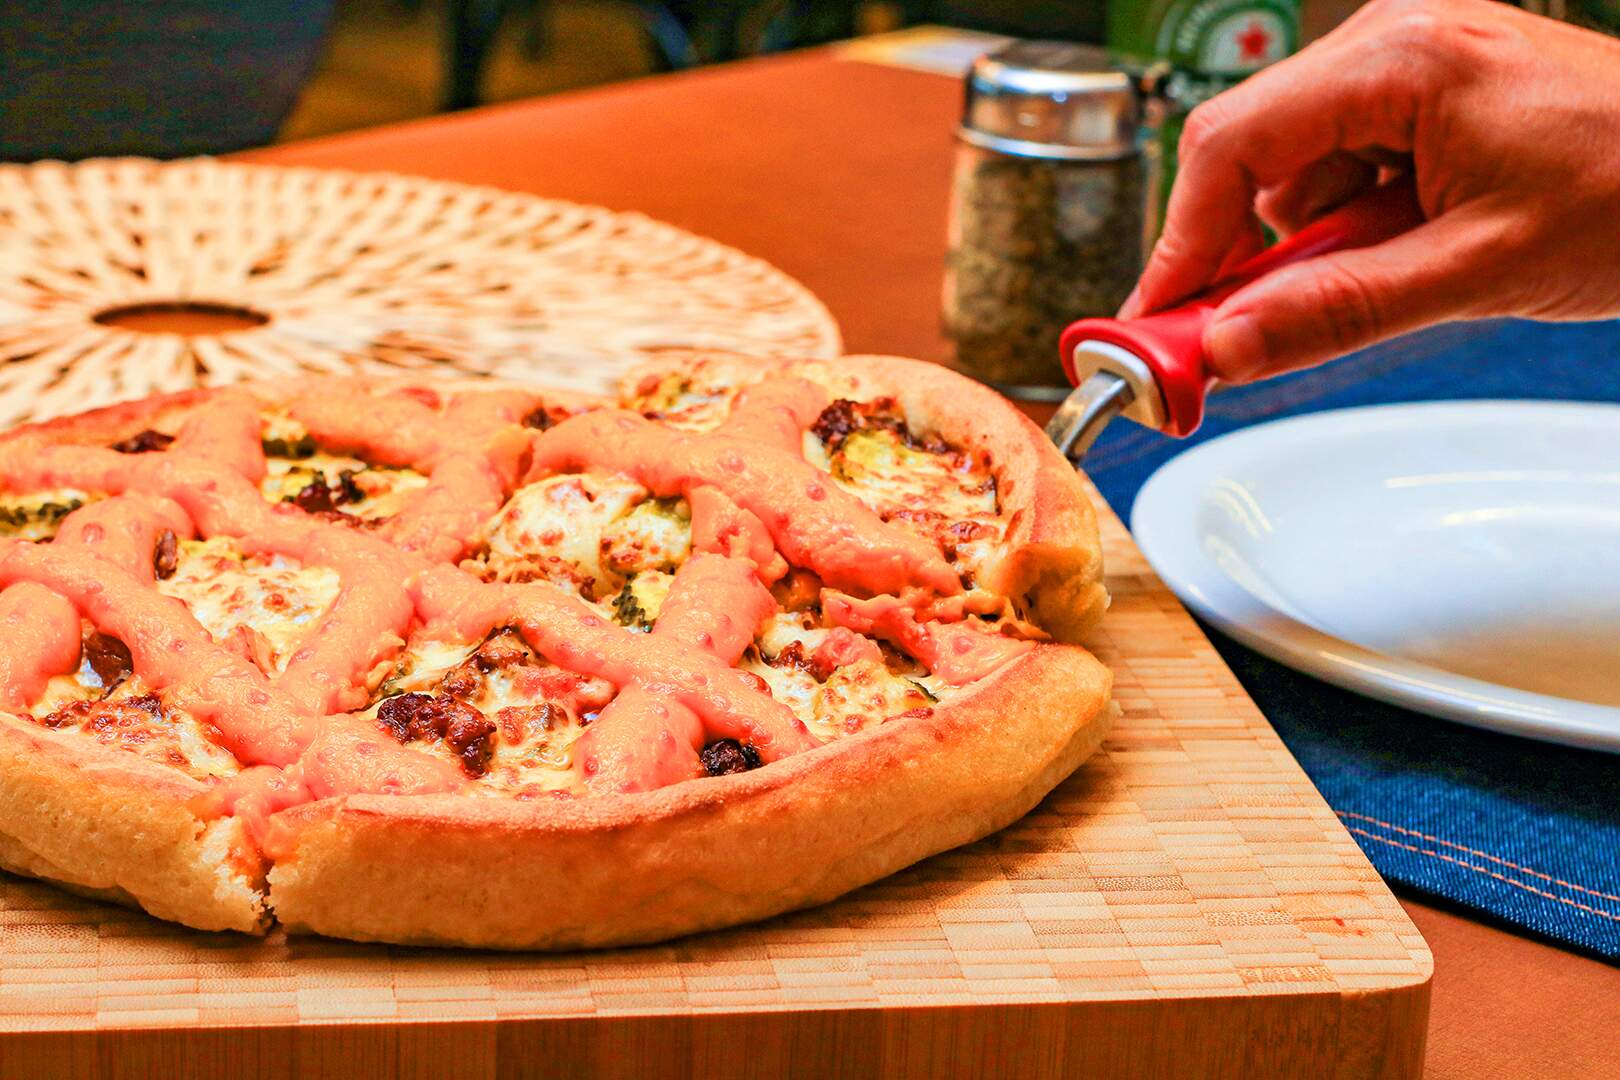 RODIZIO DE PIZZA PAN 😱😱 #pizzapan #rodizio #rodiziosp